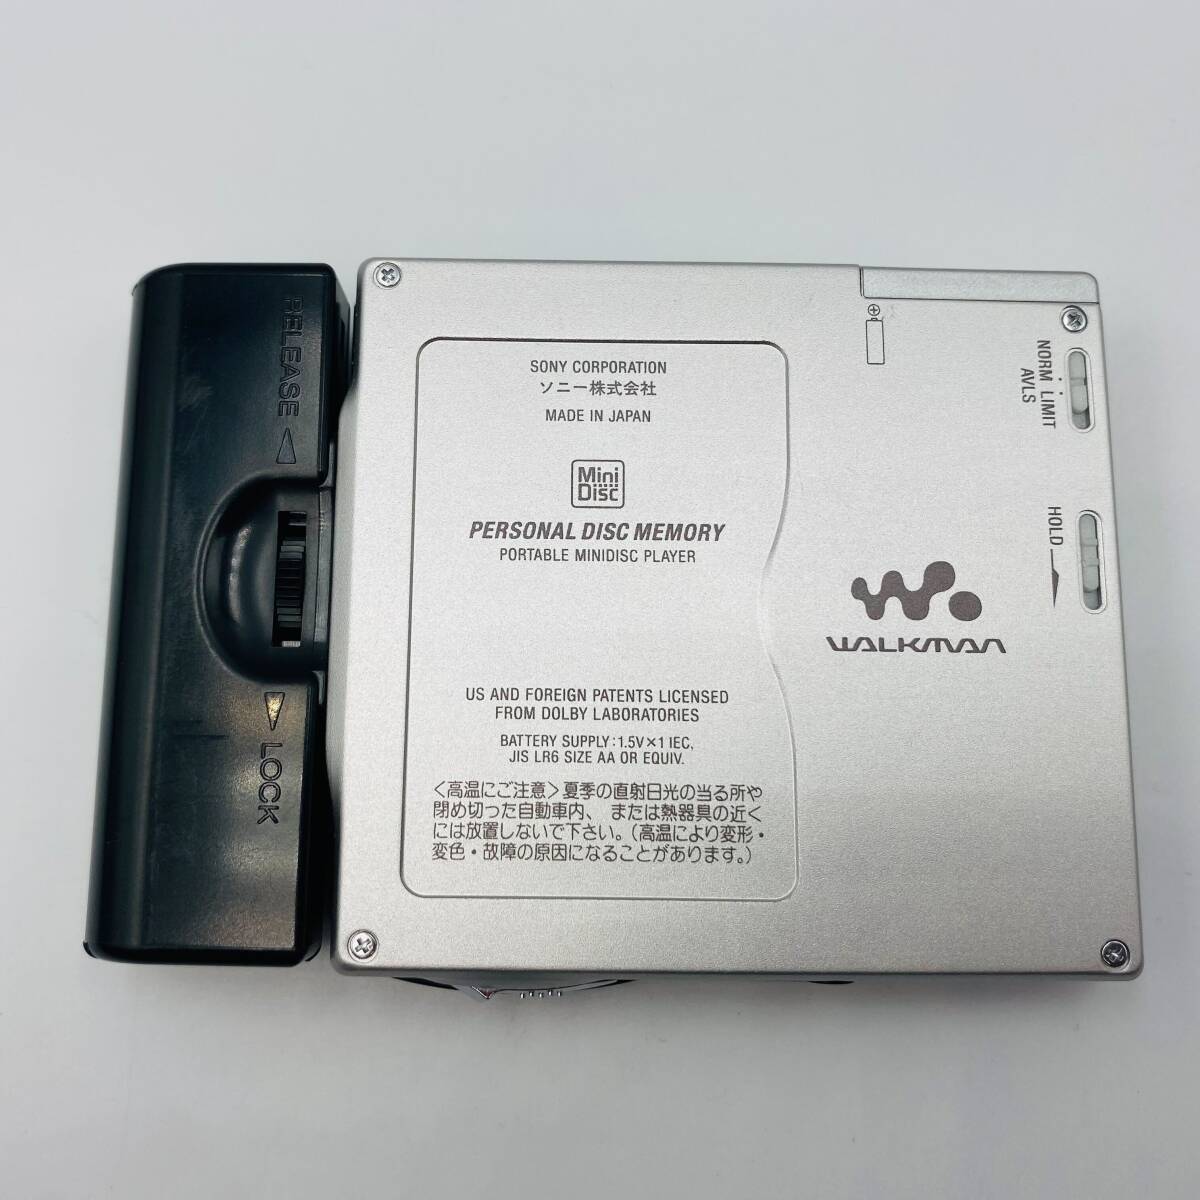 !A80363:SONY MZ-E700 портативный MD плеер серебряный WALKMAN Sony Walkman рабочий товар б/у 